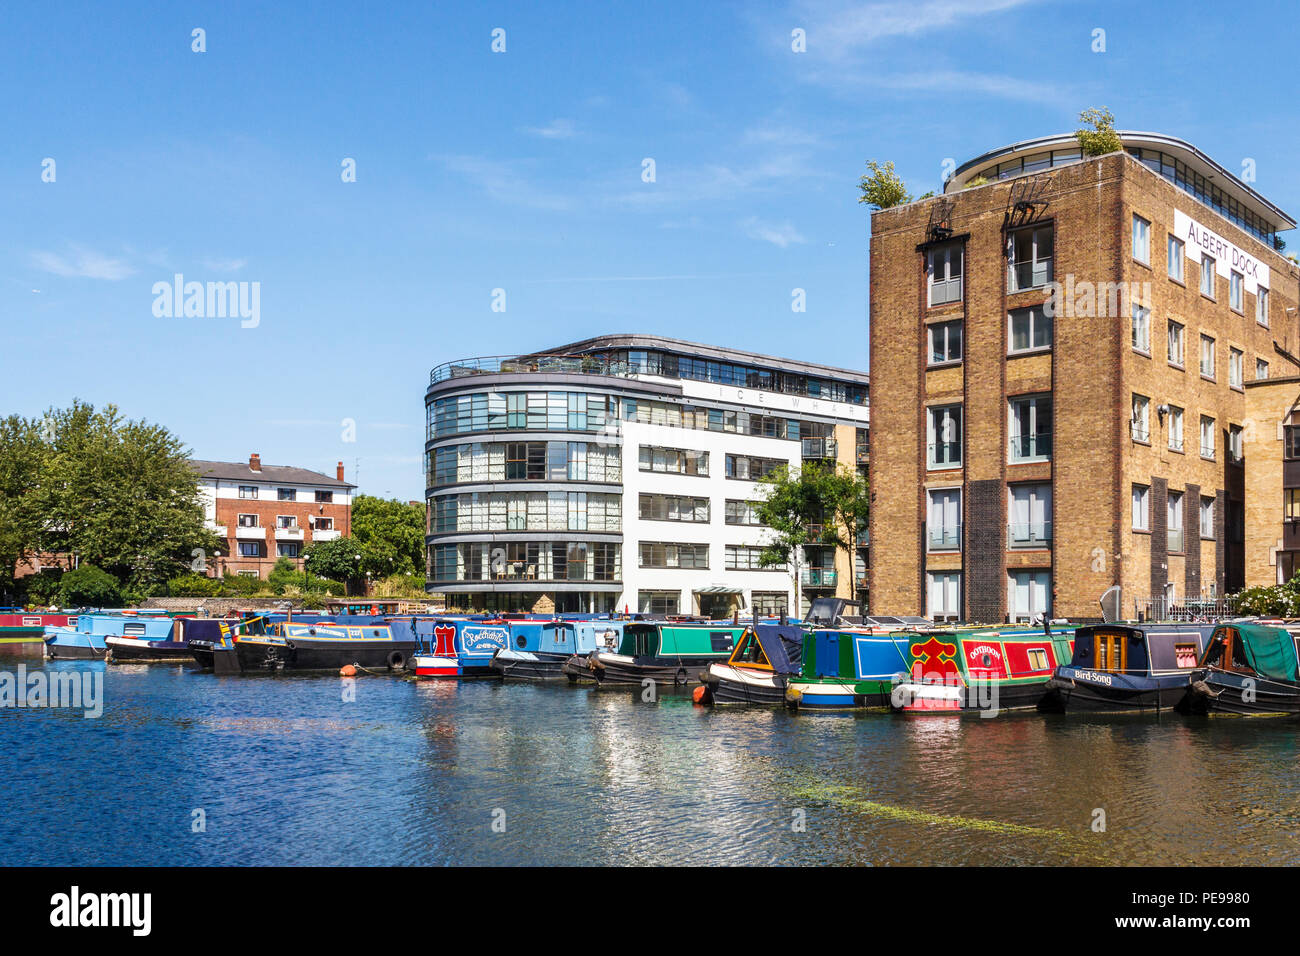 Ice Wharf et Albert Dock, maintenant, dans les appartements du bassin Battlebridge sur Regent's Canal, King's Cross, Londres, UK Banque D'Images